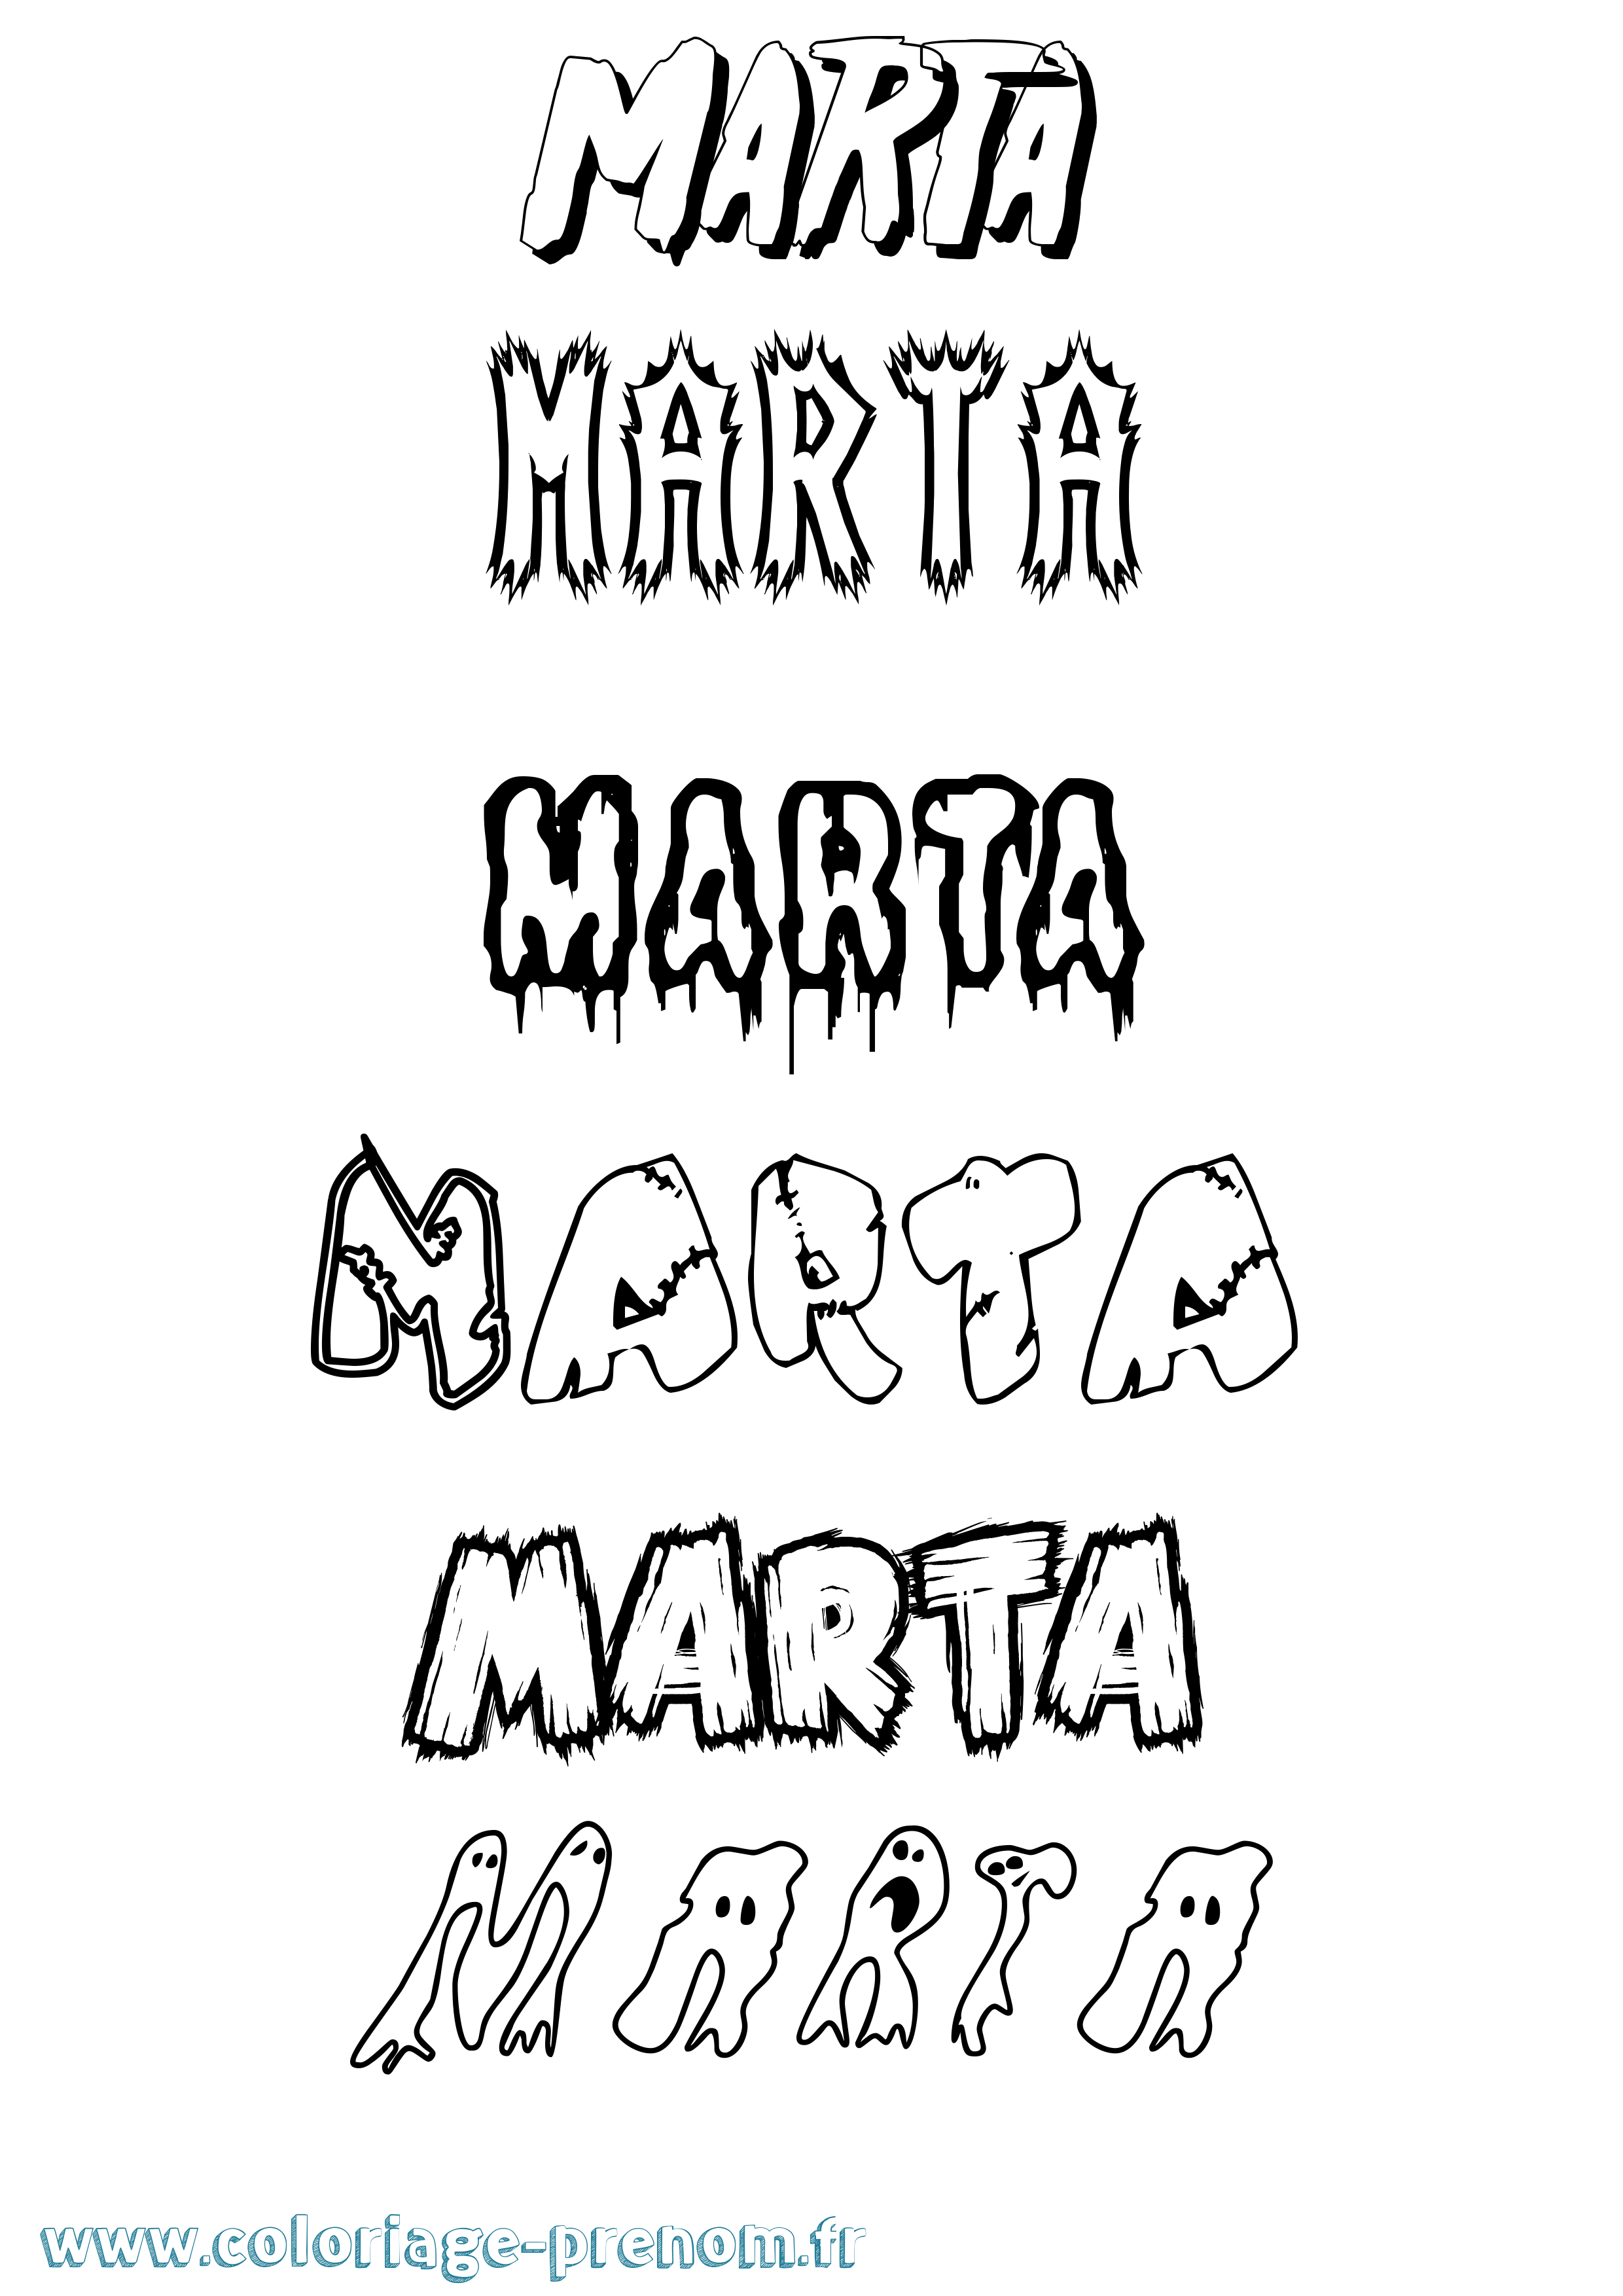 Coloriage prénom Marta Frisson